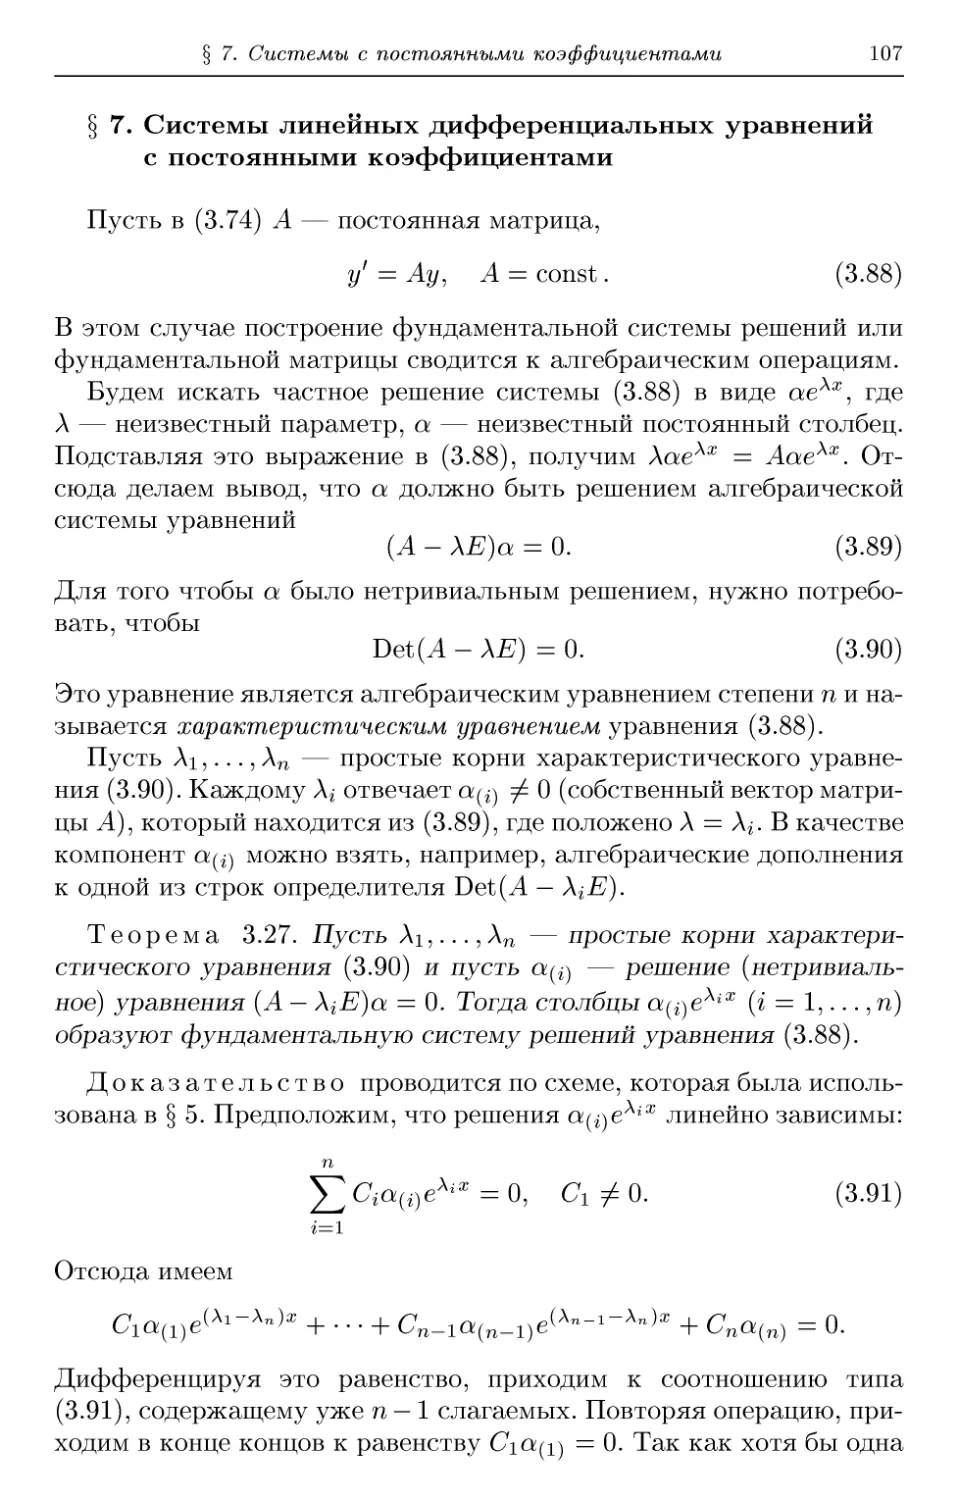 § 7. Системы линейных дифференциальных уравнений с постоянными коэффициентами